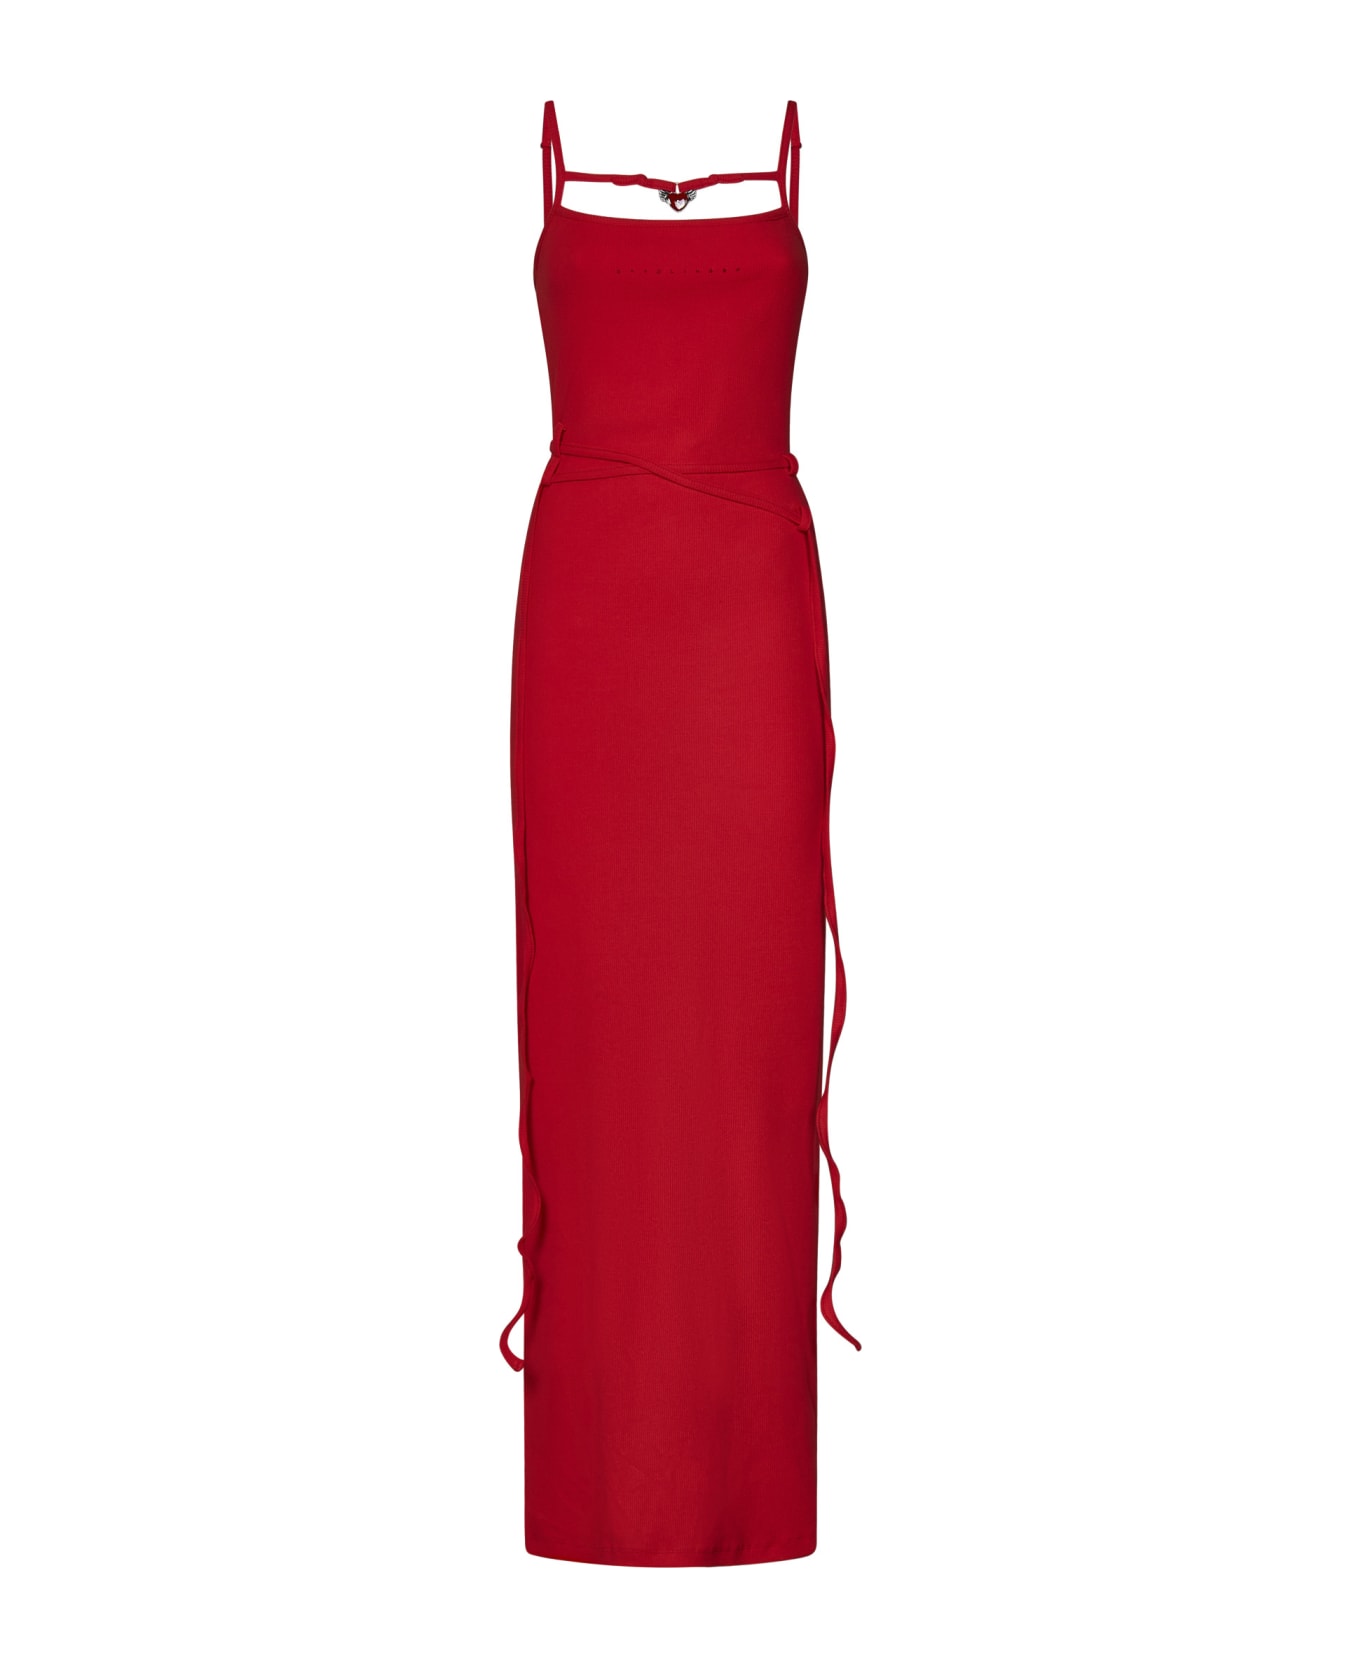 Ottolinger Dress - Red